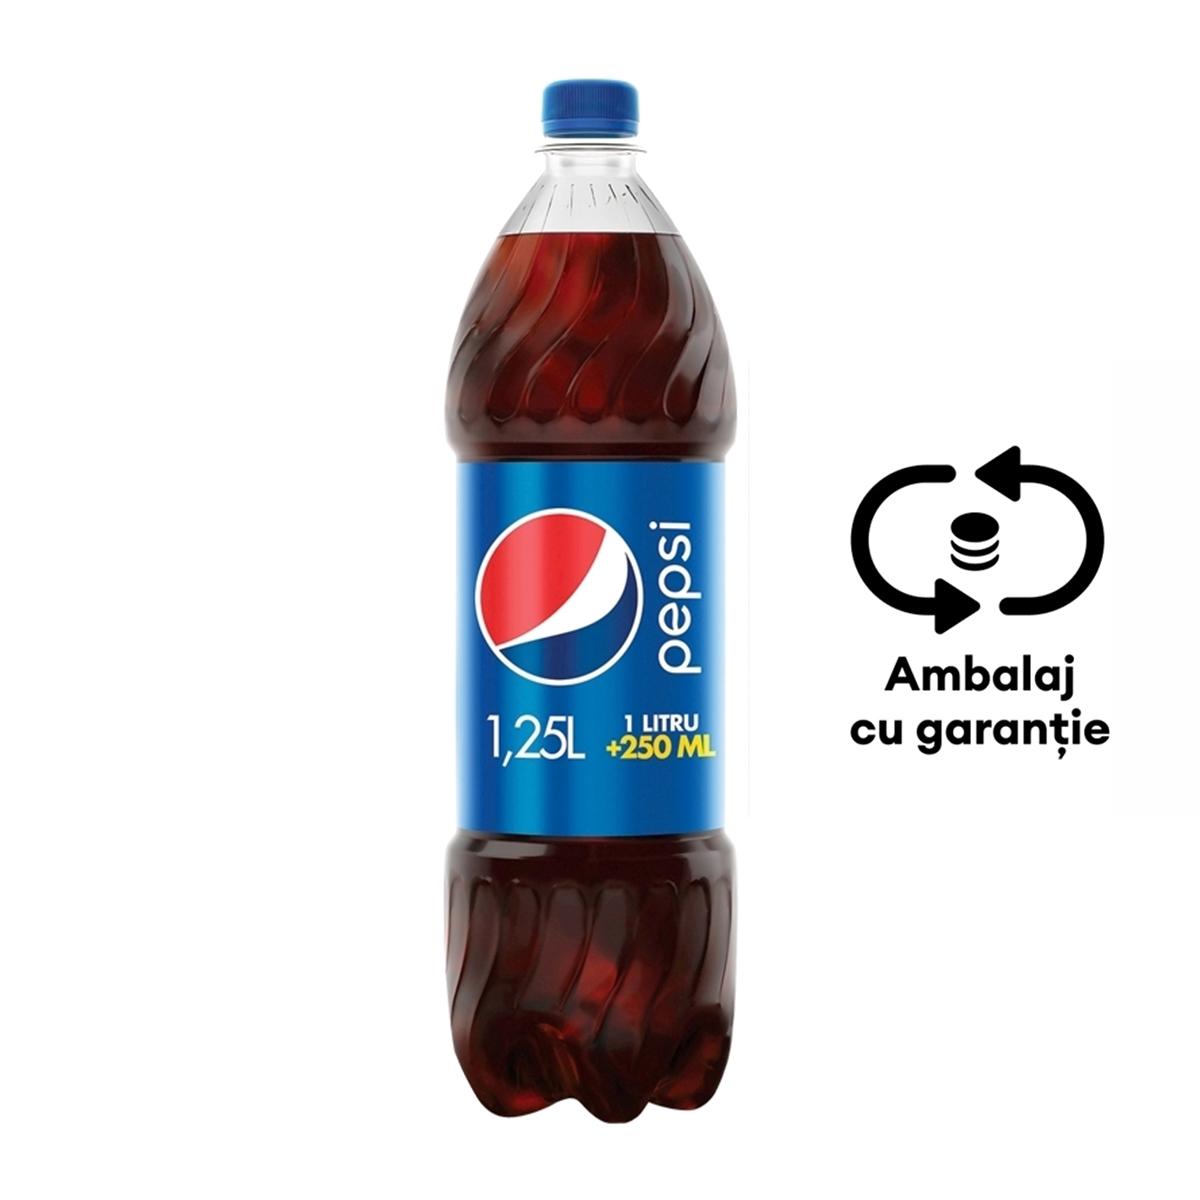 Bautura racoritoare carbogazoasa Pepsi, 1.25 l, 6 sticle/bax, eticheta SGR